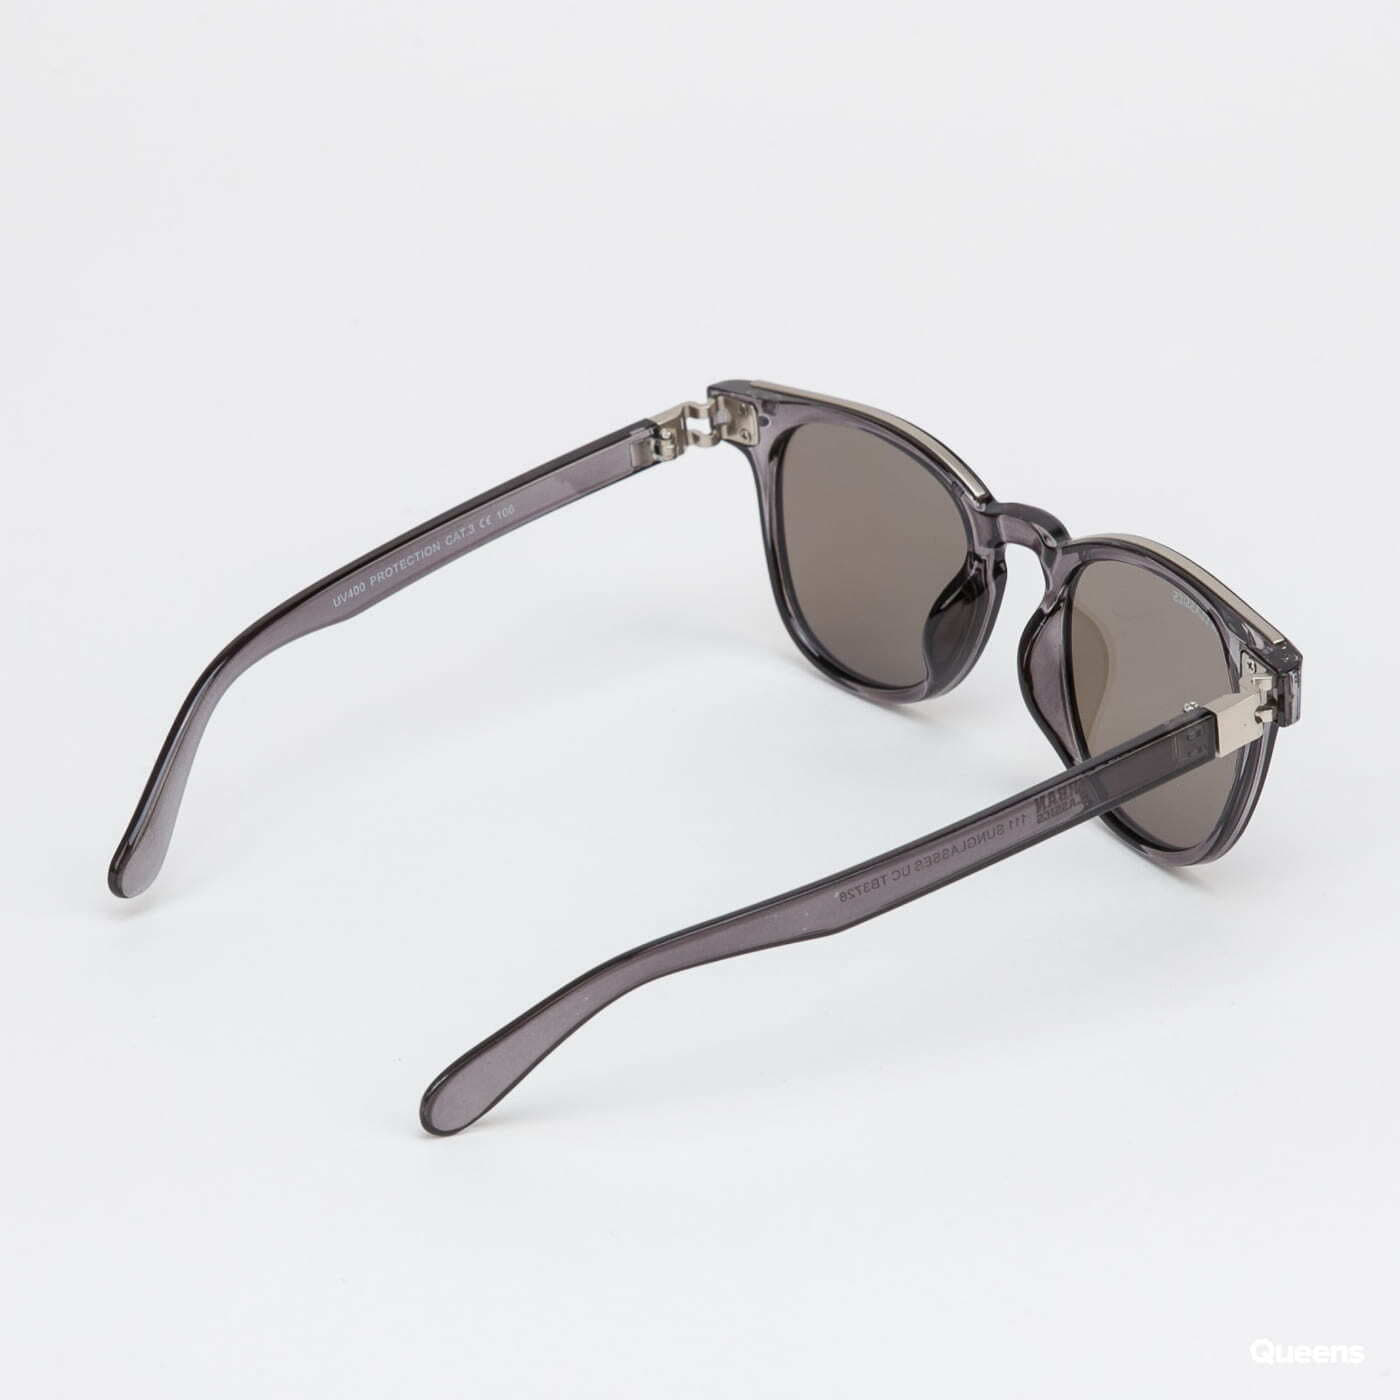 Sunglasses Urban UC 111 Queens Sunglasses Silver Grey/ Classics 